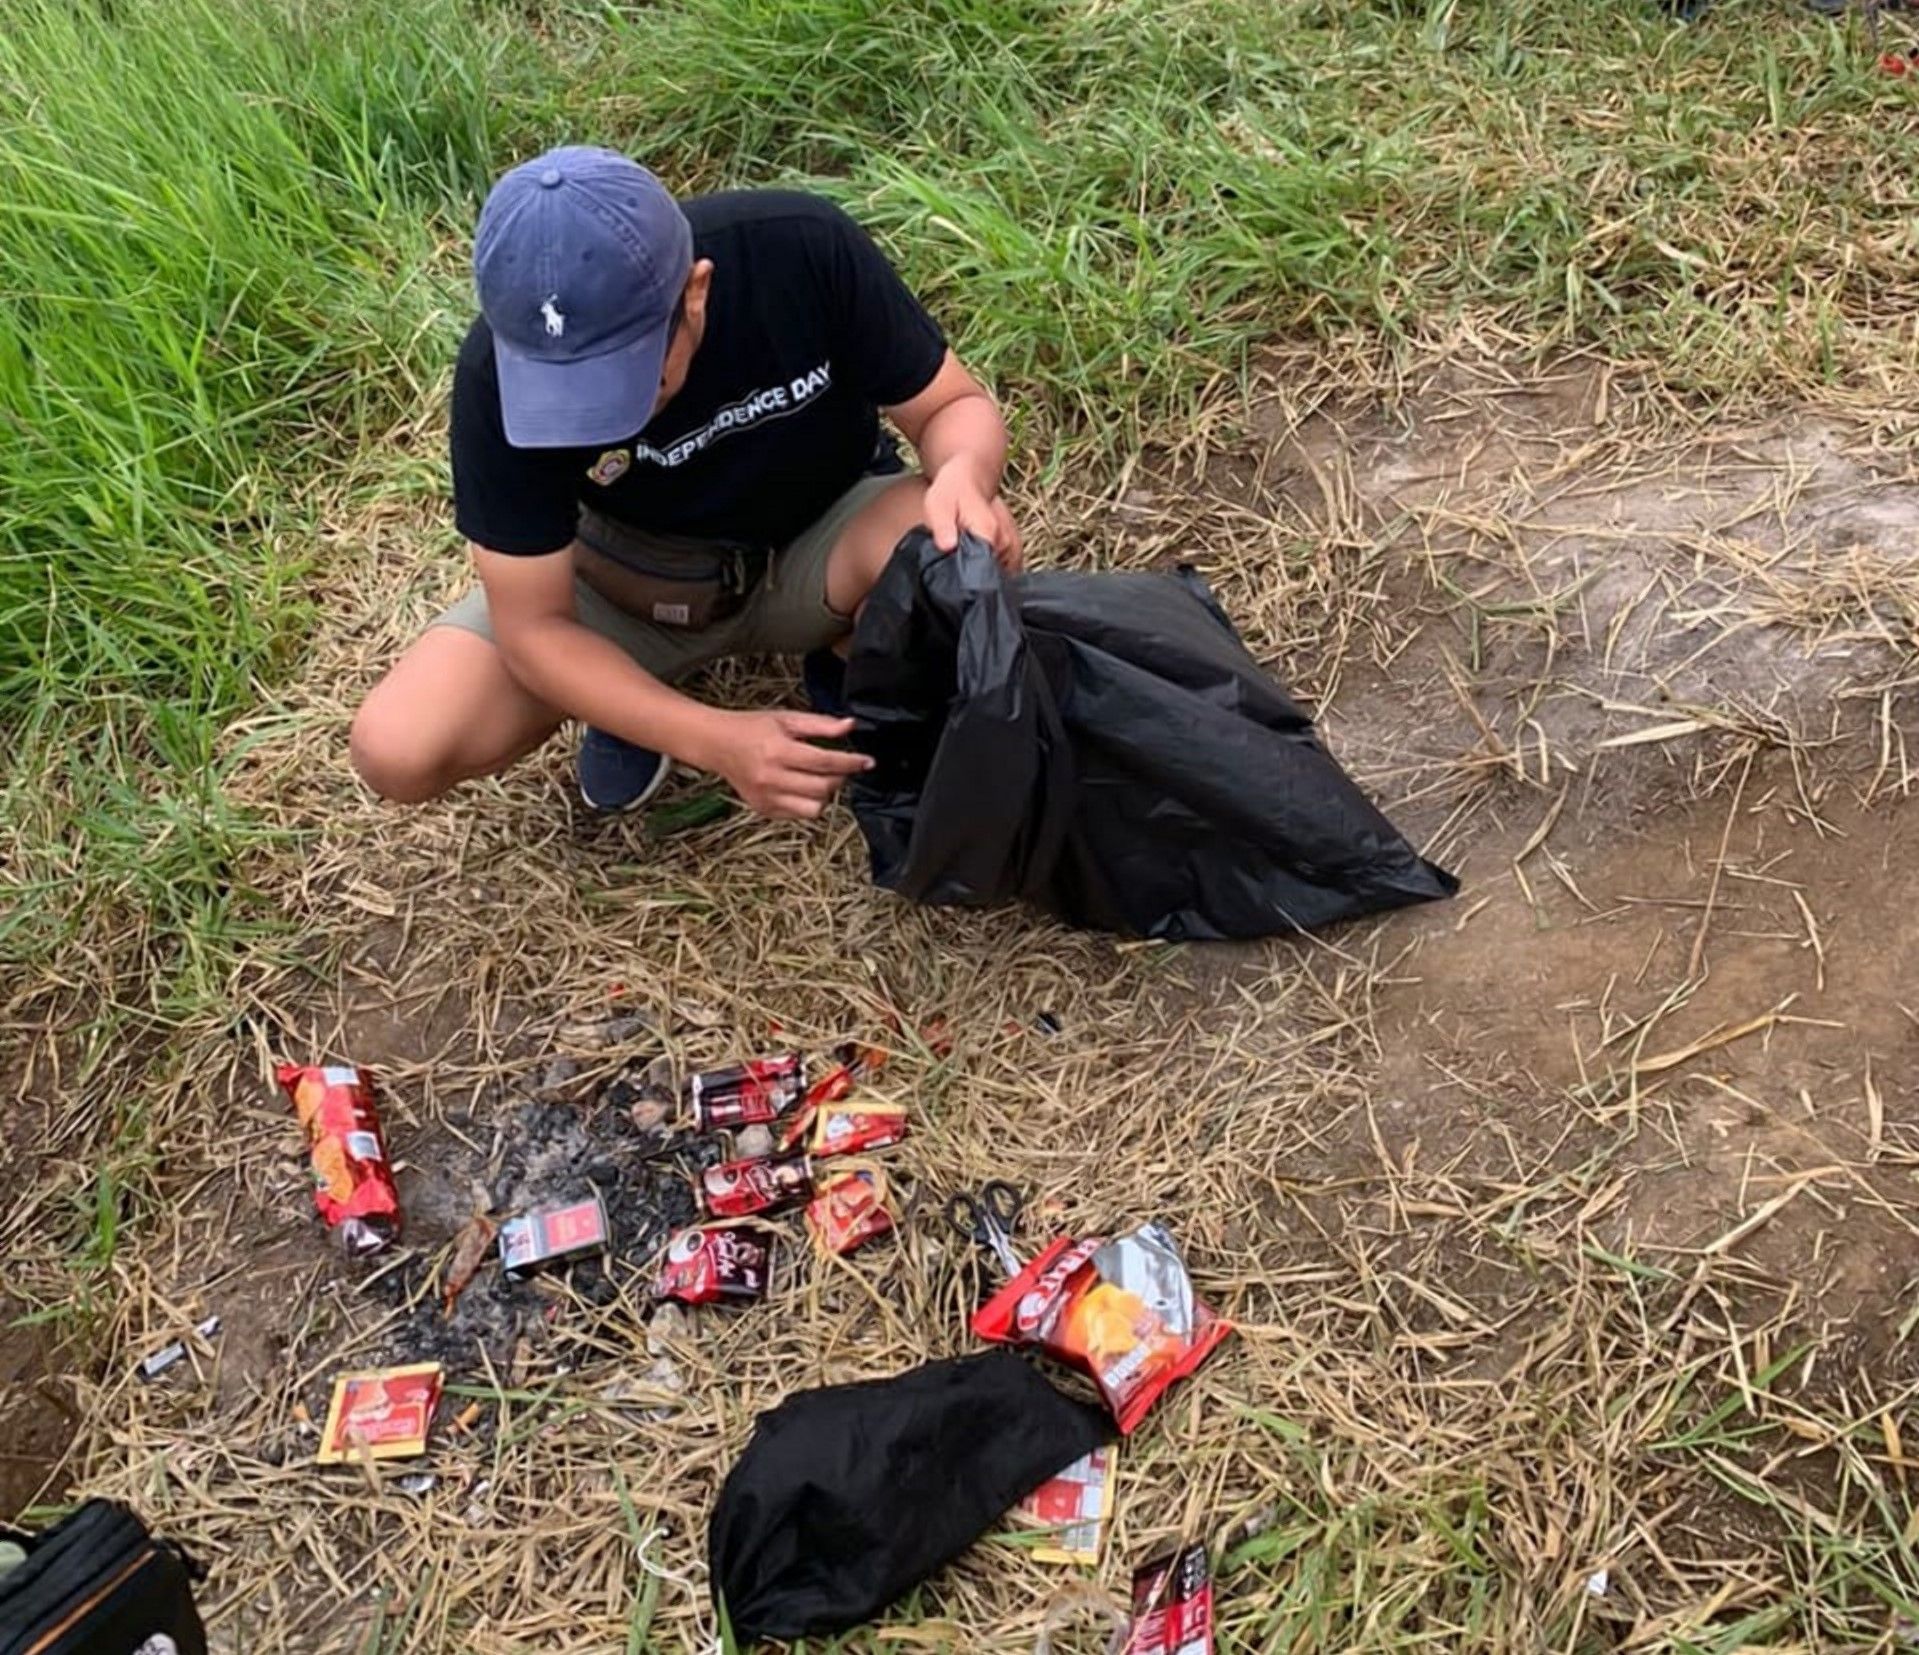 Anggota Karang Taruna Kecamatan Cikancung memungut sampah di lokasi Gunung Pangradinan.* /Dok.Karang Taruna Kac. Cikancung